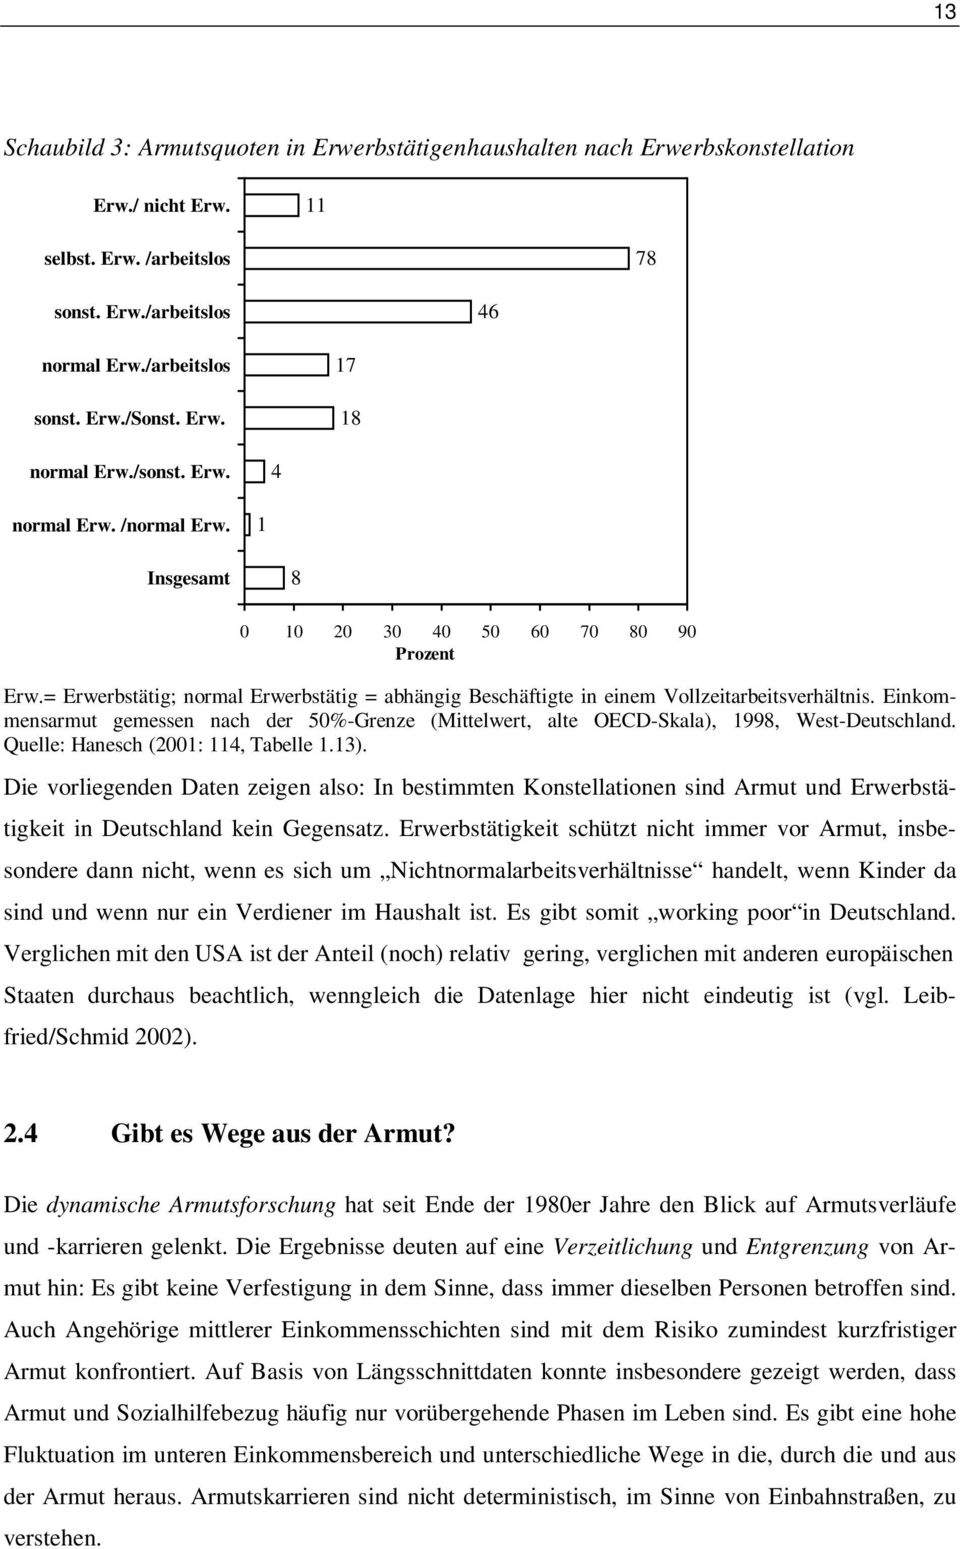 Einkommensarmut gemessen nach der 50%-Grenze (Mittelwert, alte OECD-Skala), 1998, West-Deutschland. Quelle: Hanesch (2001: 114, Tabelle 1.13).